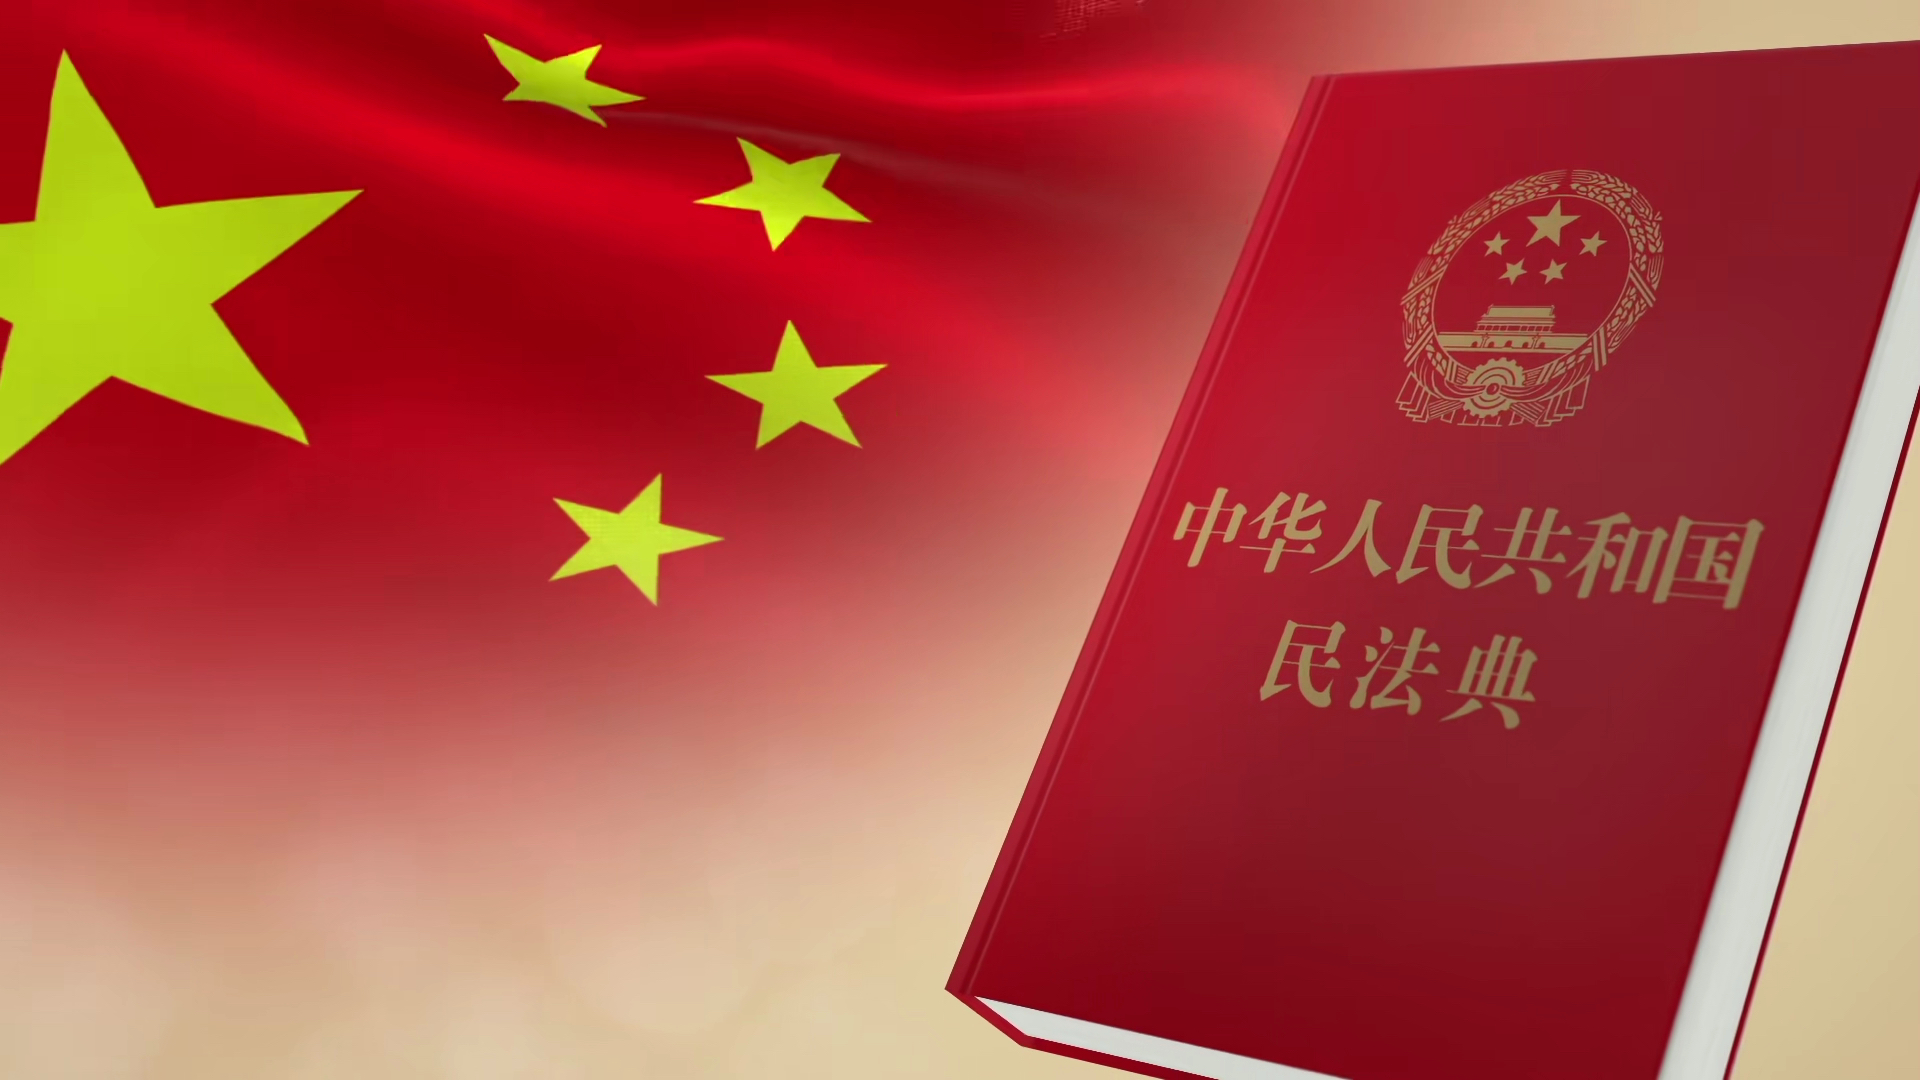 武乡县图书馆举办《中华人民共和国民法典》宣传活动